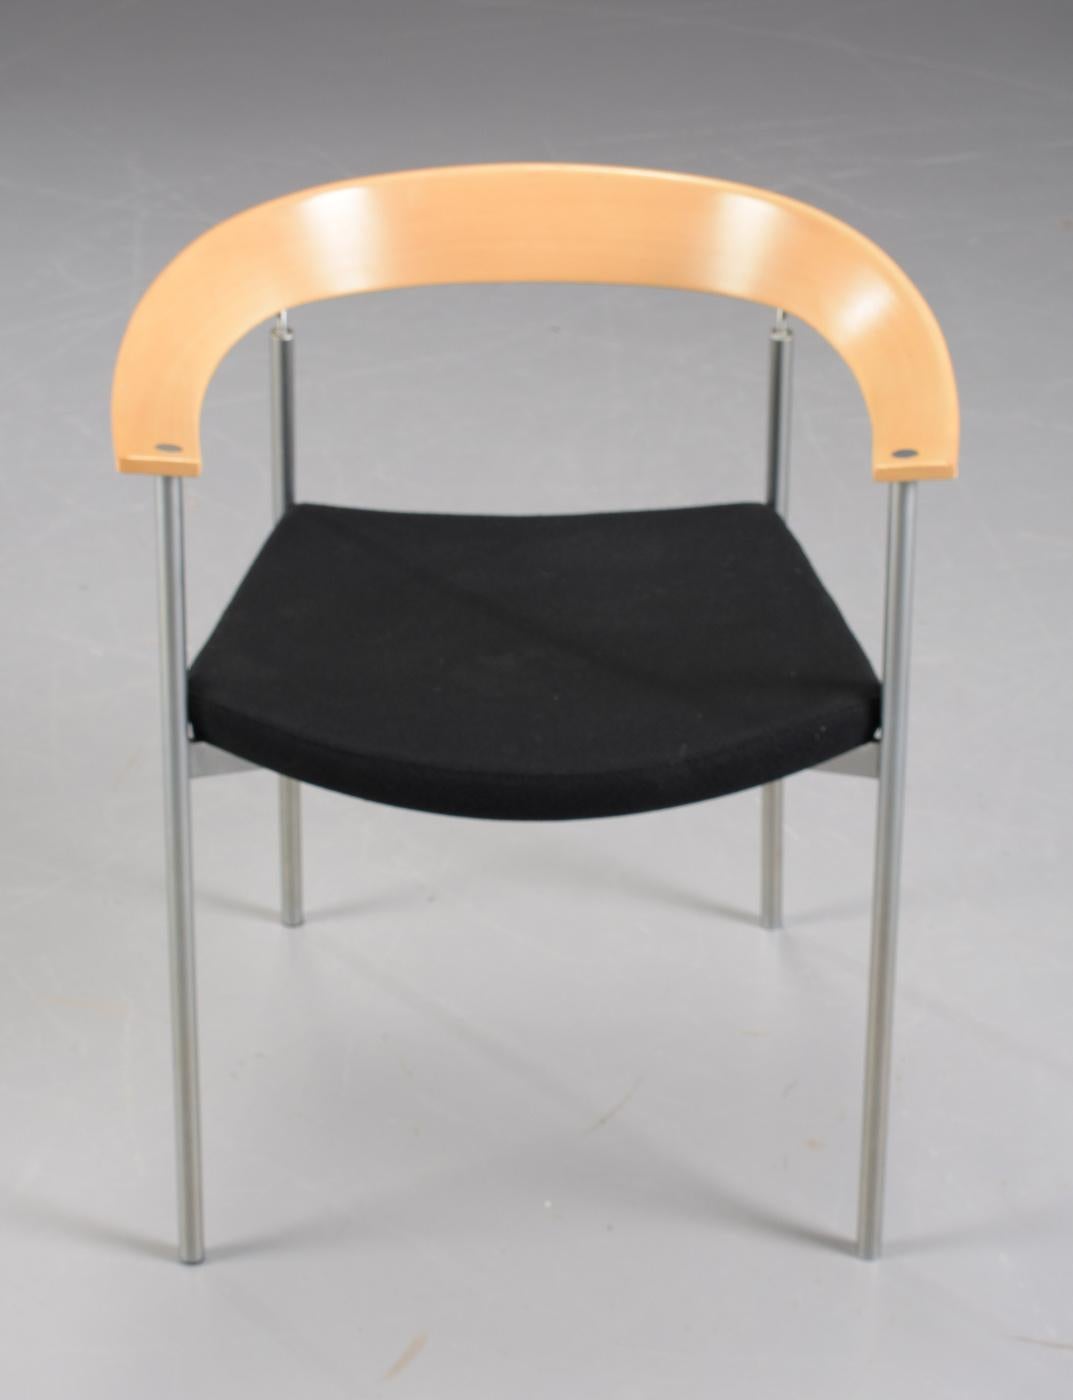 Satz von acht stapelbaren dänischen Sesseln von Johannes Foersom, entworfen 1998, aus Stahlrohr, Buche, Chrom und schwarzem Leder, hergestellt von Paustian.

Die Stühle haben elegante, organisch geformte Arm- und Rückenlehnen aus Buche und ein